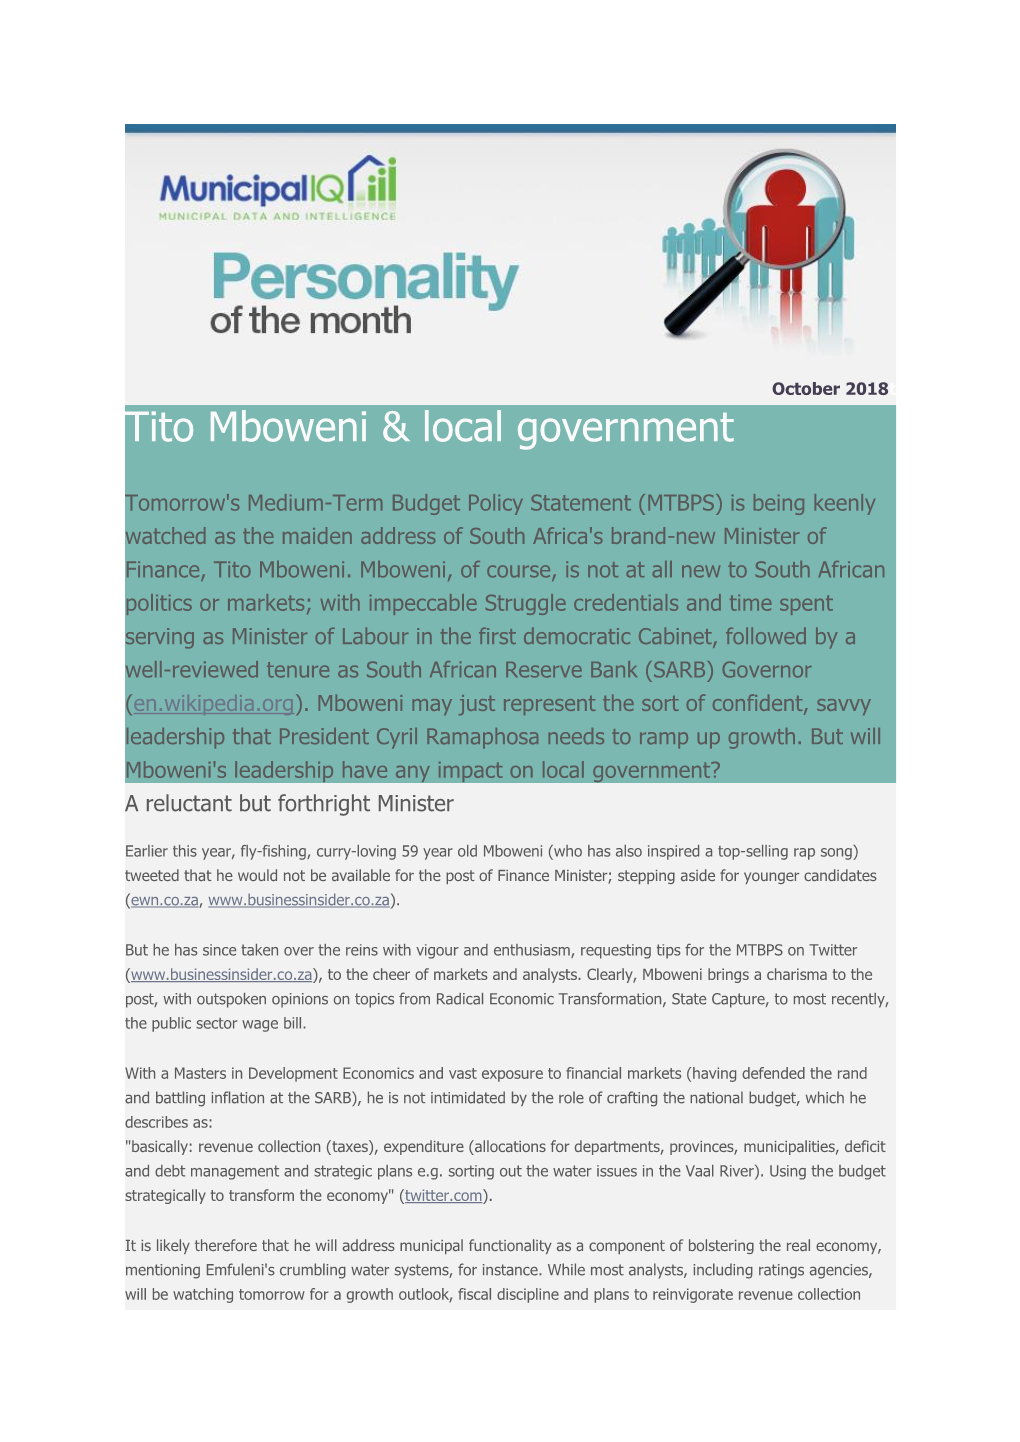 Tito Mboweni & Local Government